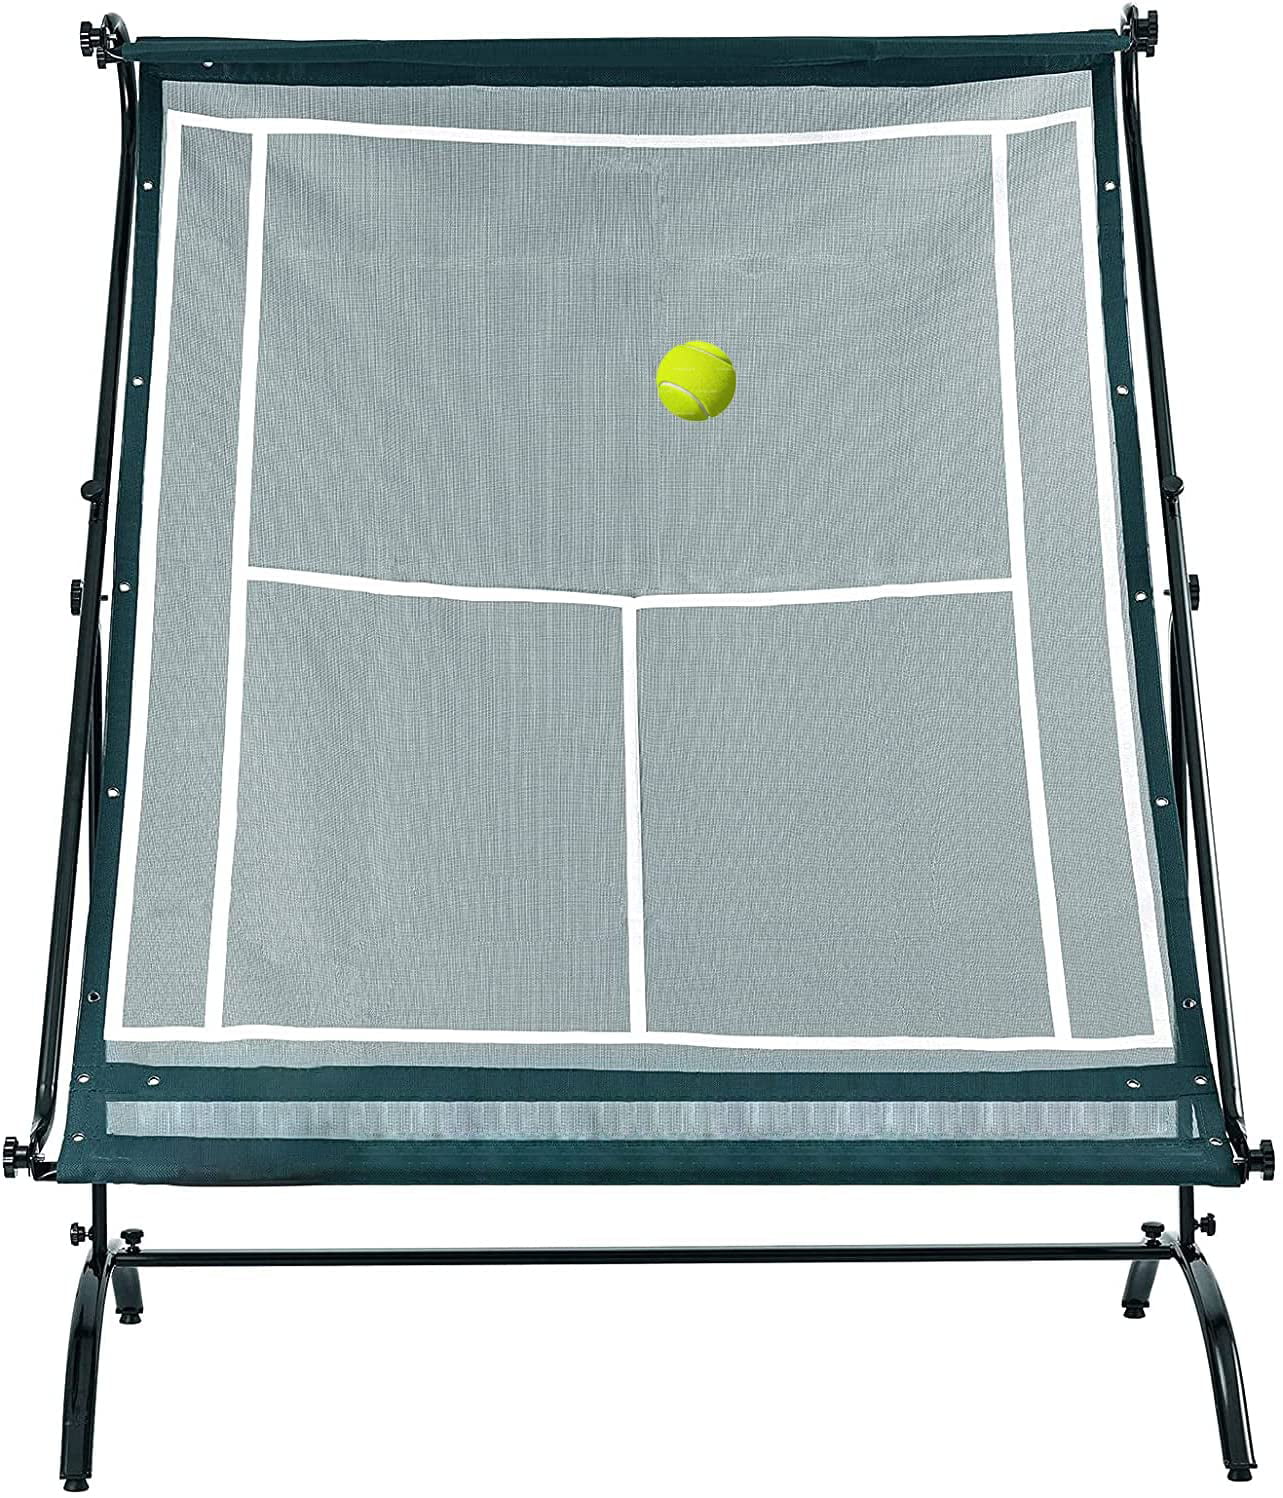 Portable Tennis Rebound Net Tennis Rebounder Rebound Wall for Tennis & Racquet Sports Ball Backboard